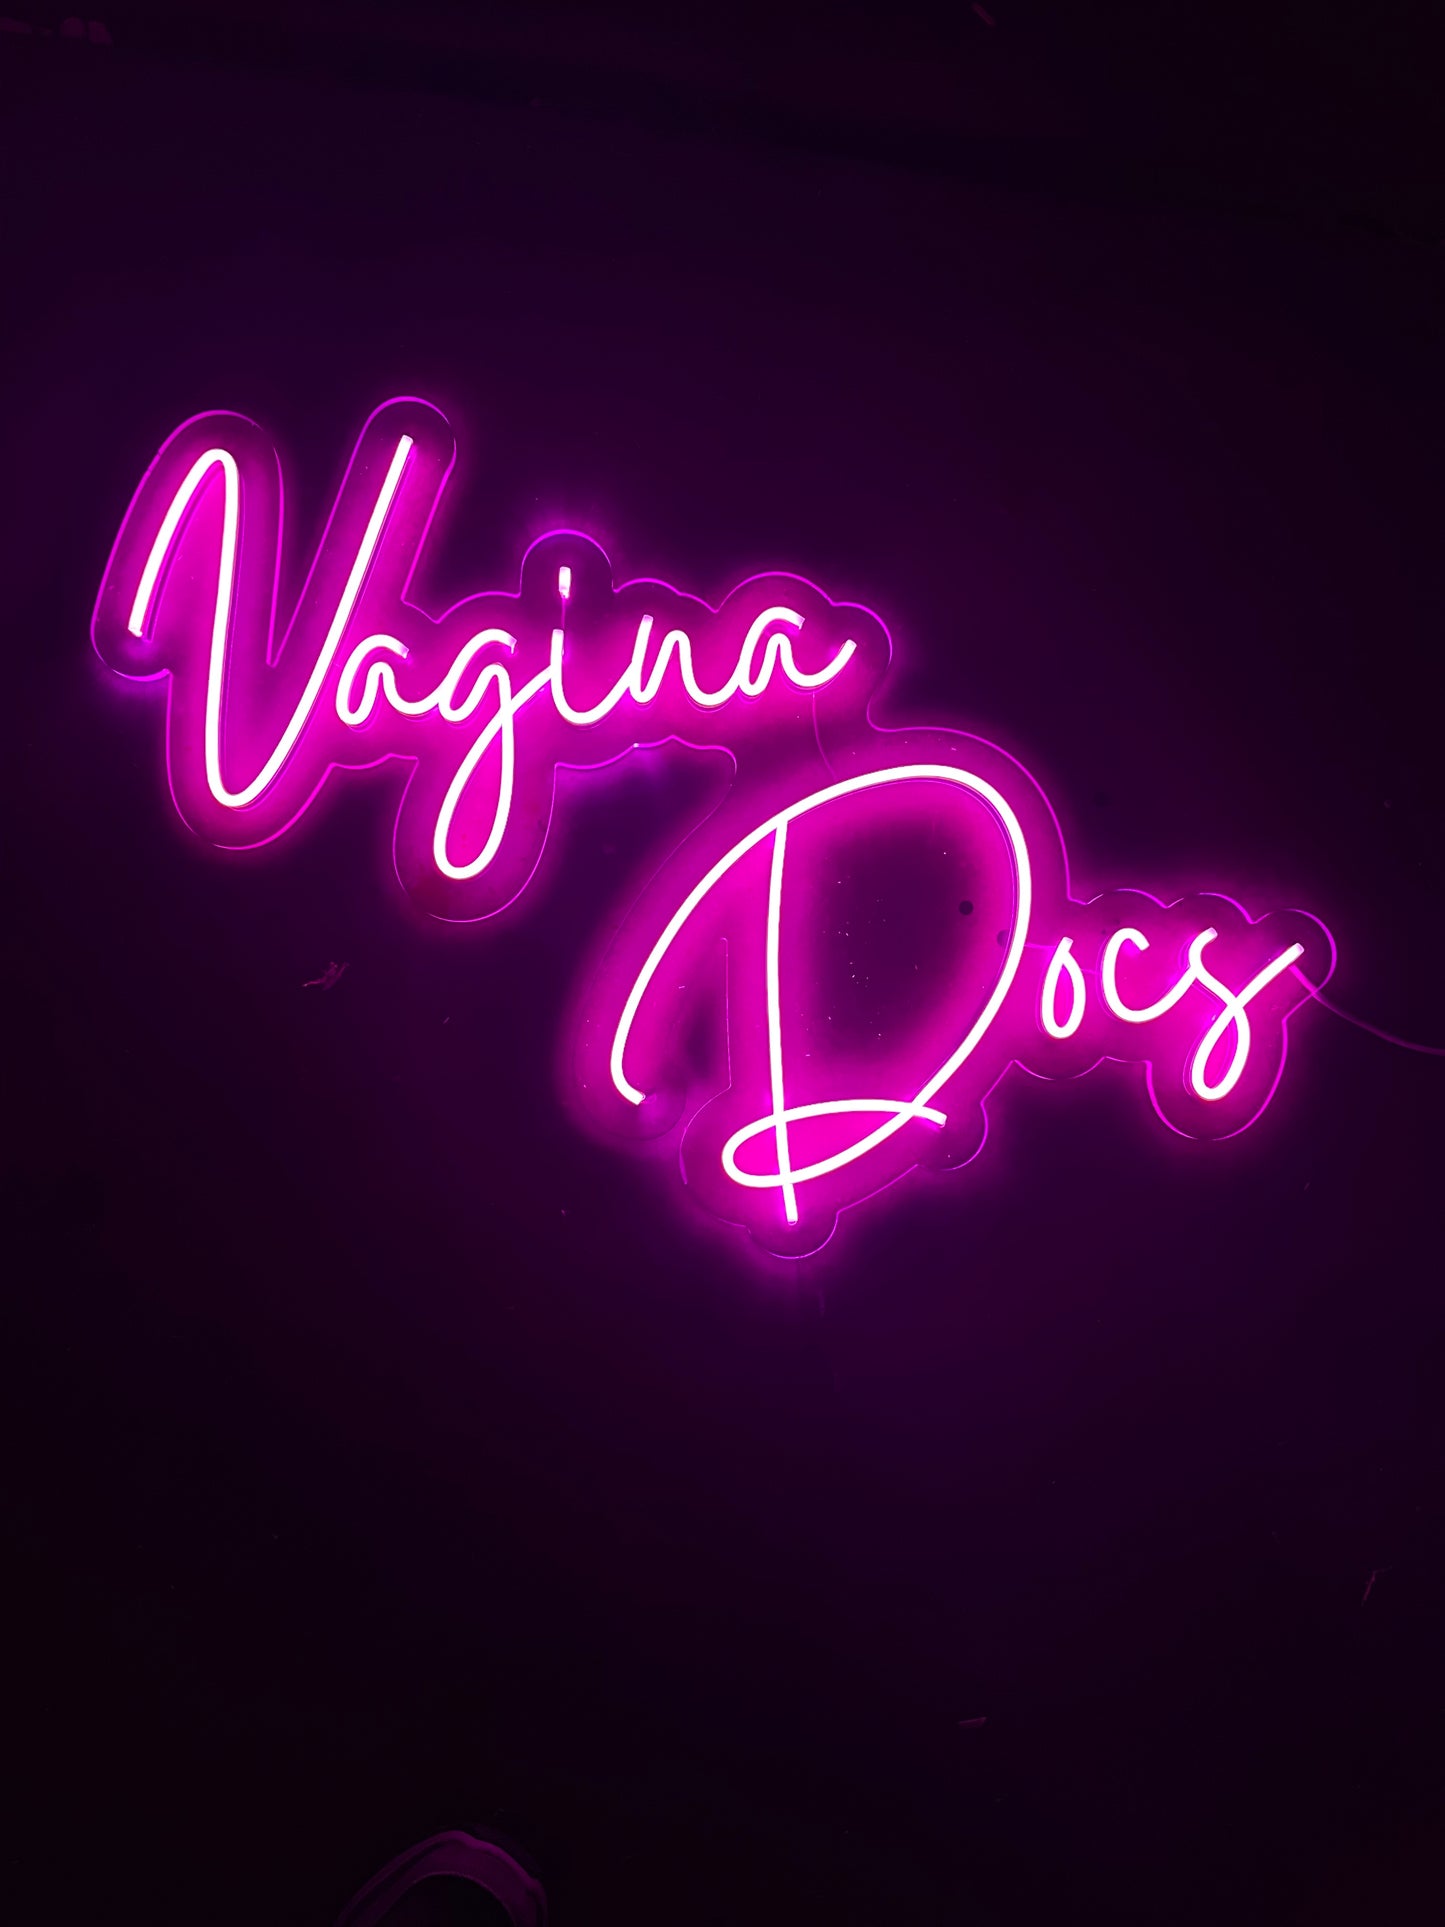 Vagina Docs